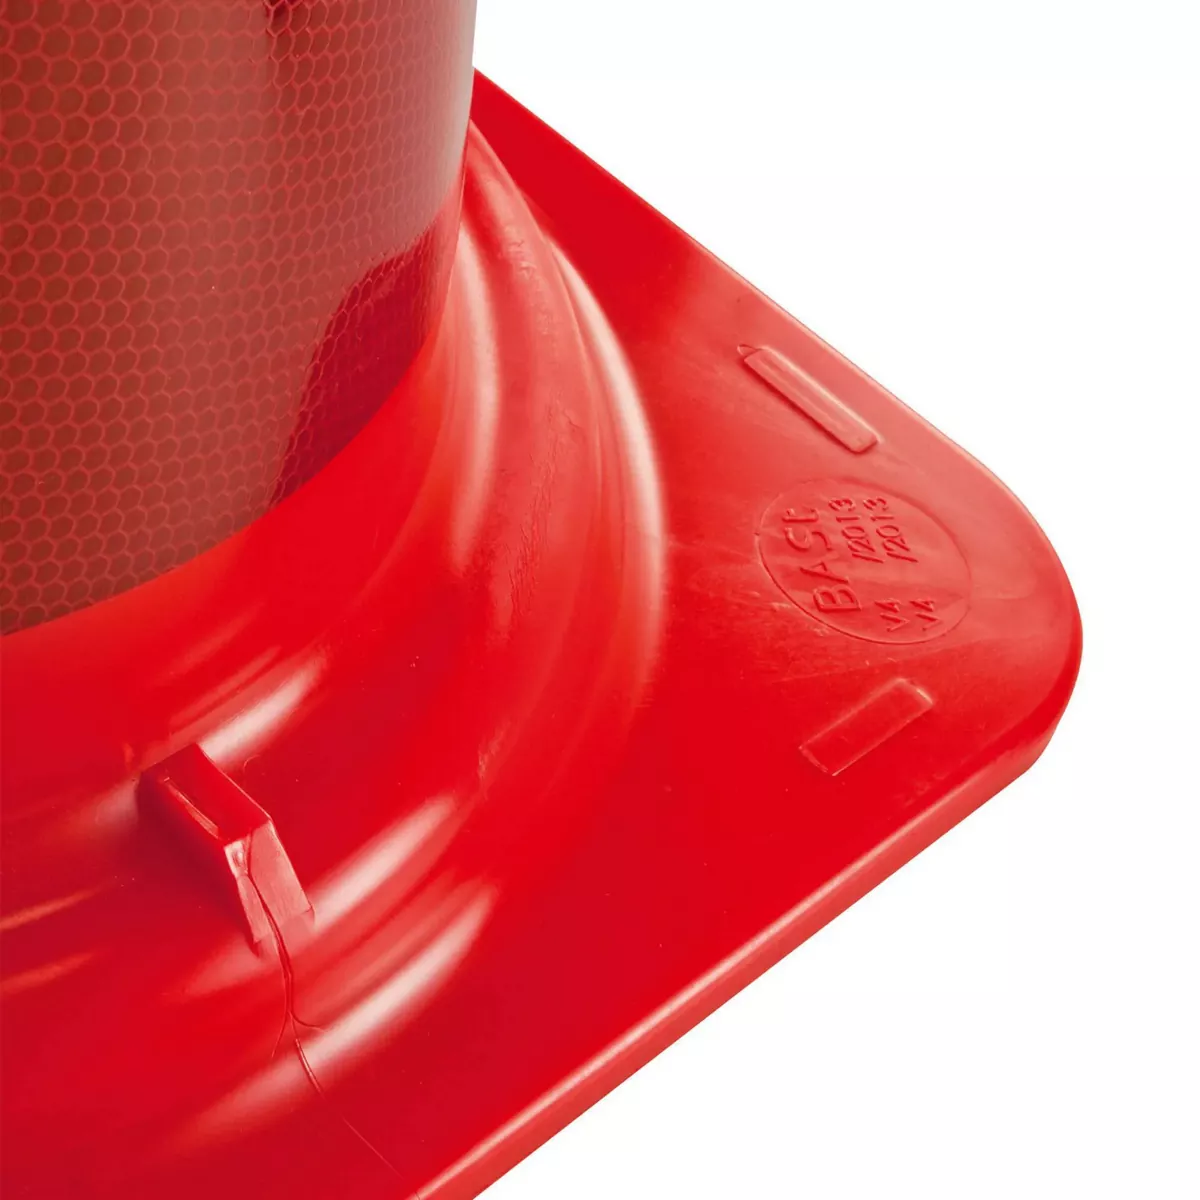 Morion-Leitkegel, 750 mm, rot-orange, einteilig, Kegel aus PVC, vollflächig rot-weiß reflektierend, Typ B, Gewichtsklasse III, nach TL-Leitkegel und DIN EN 13422 geprüft